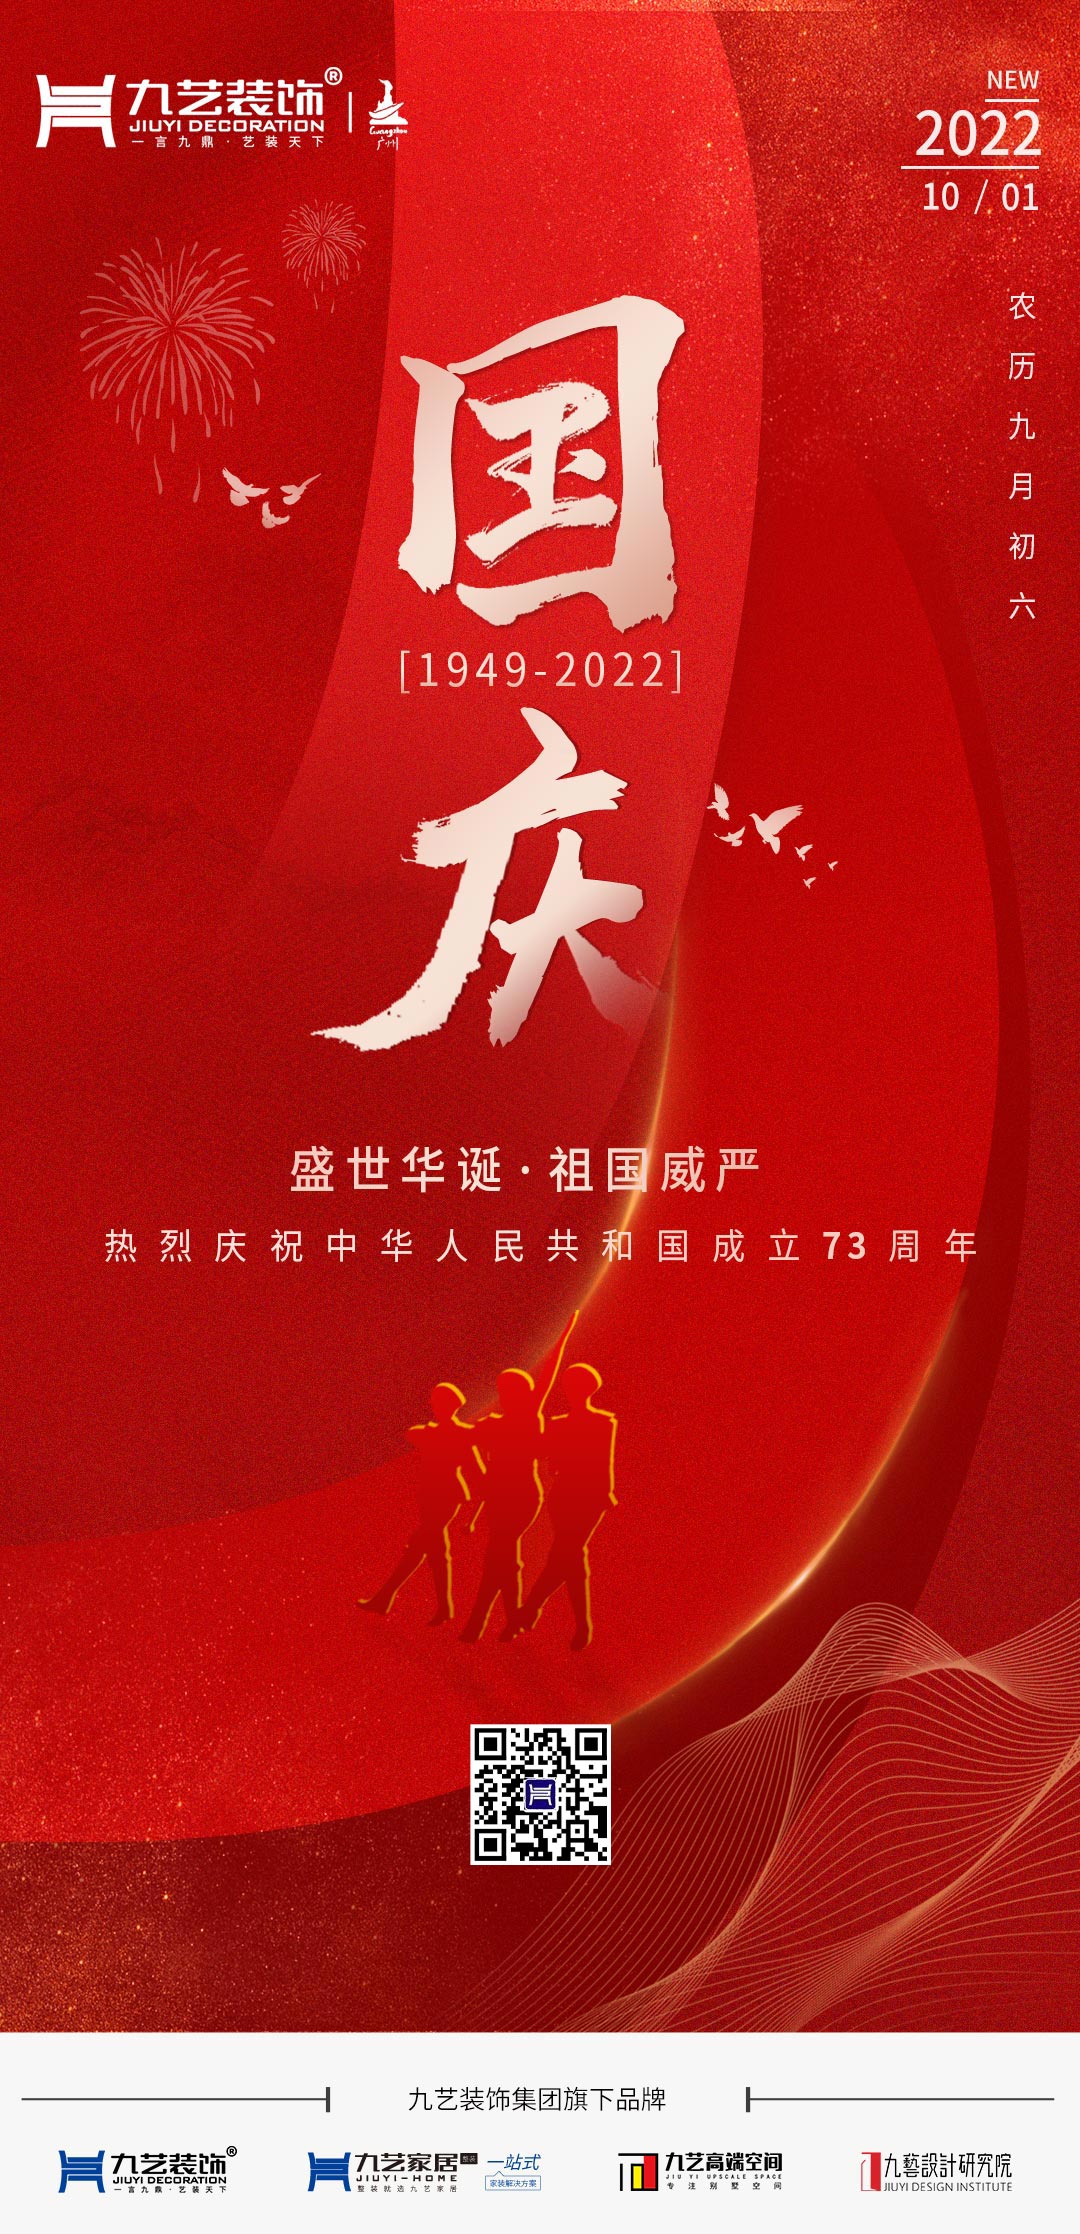 九艺装饰集团热烈庆祝中华人民共和国成立73周年！